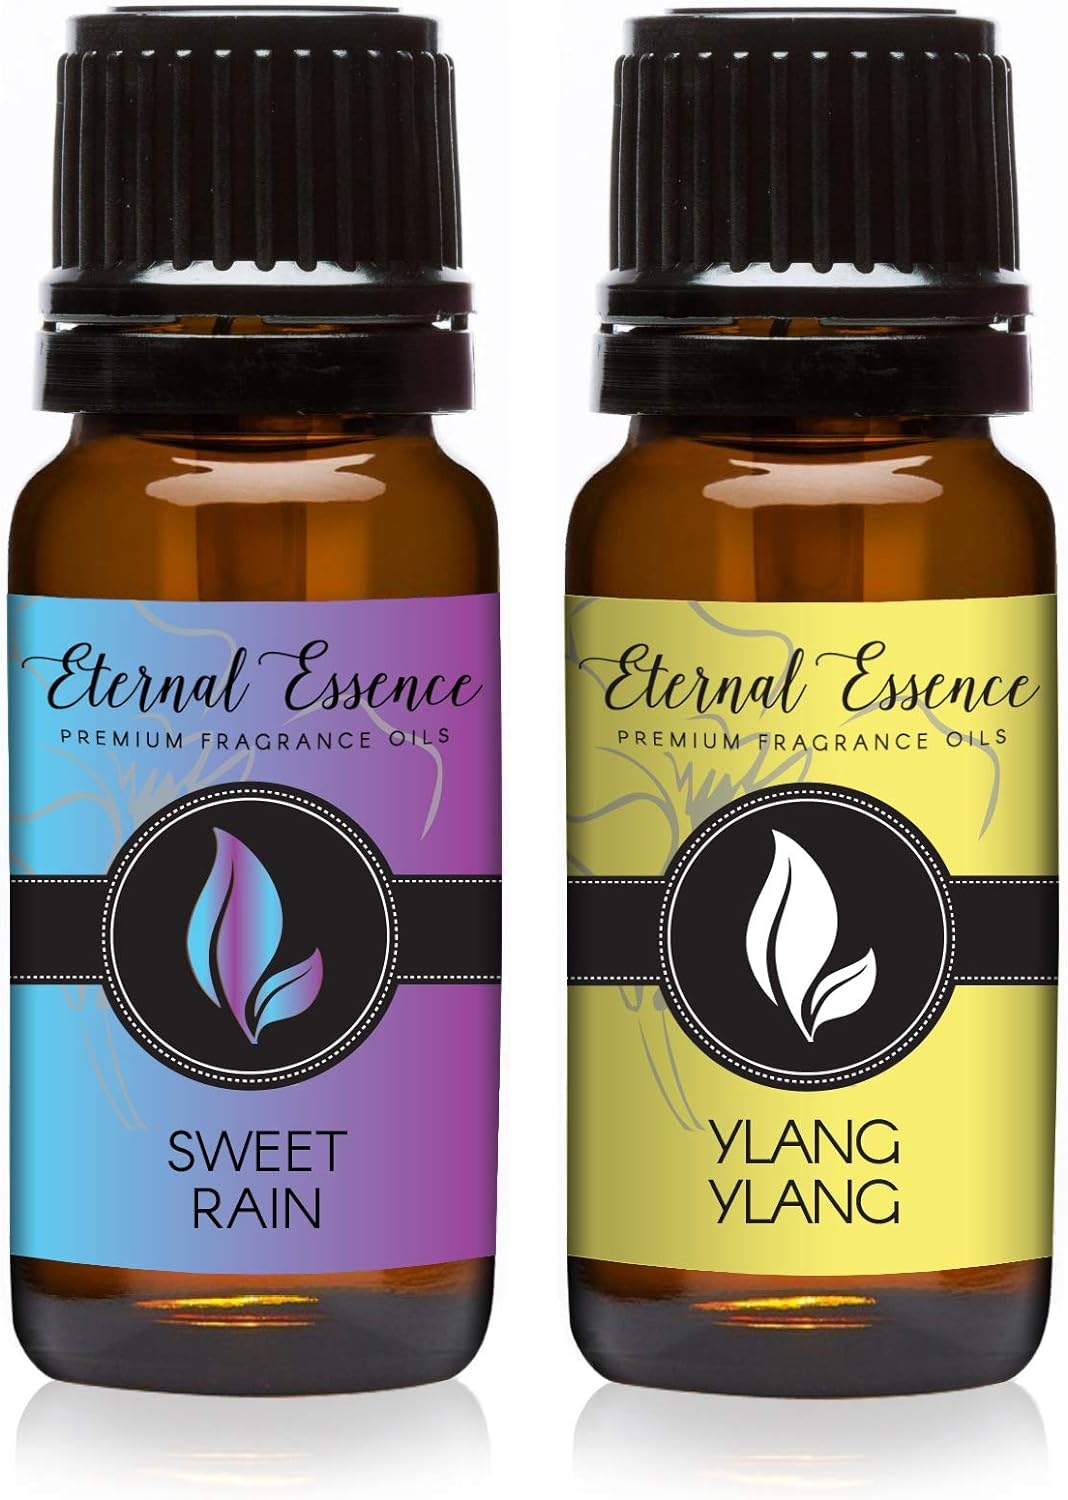 Sweet Rain & Ylang Ylang